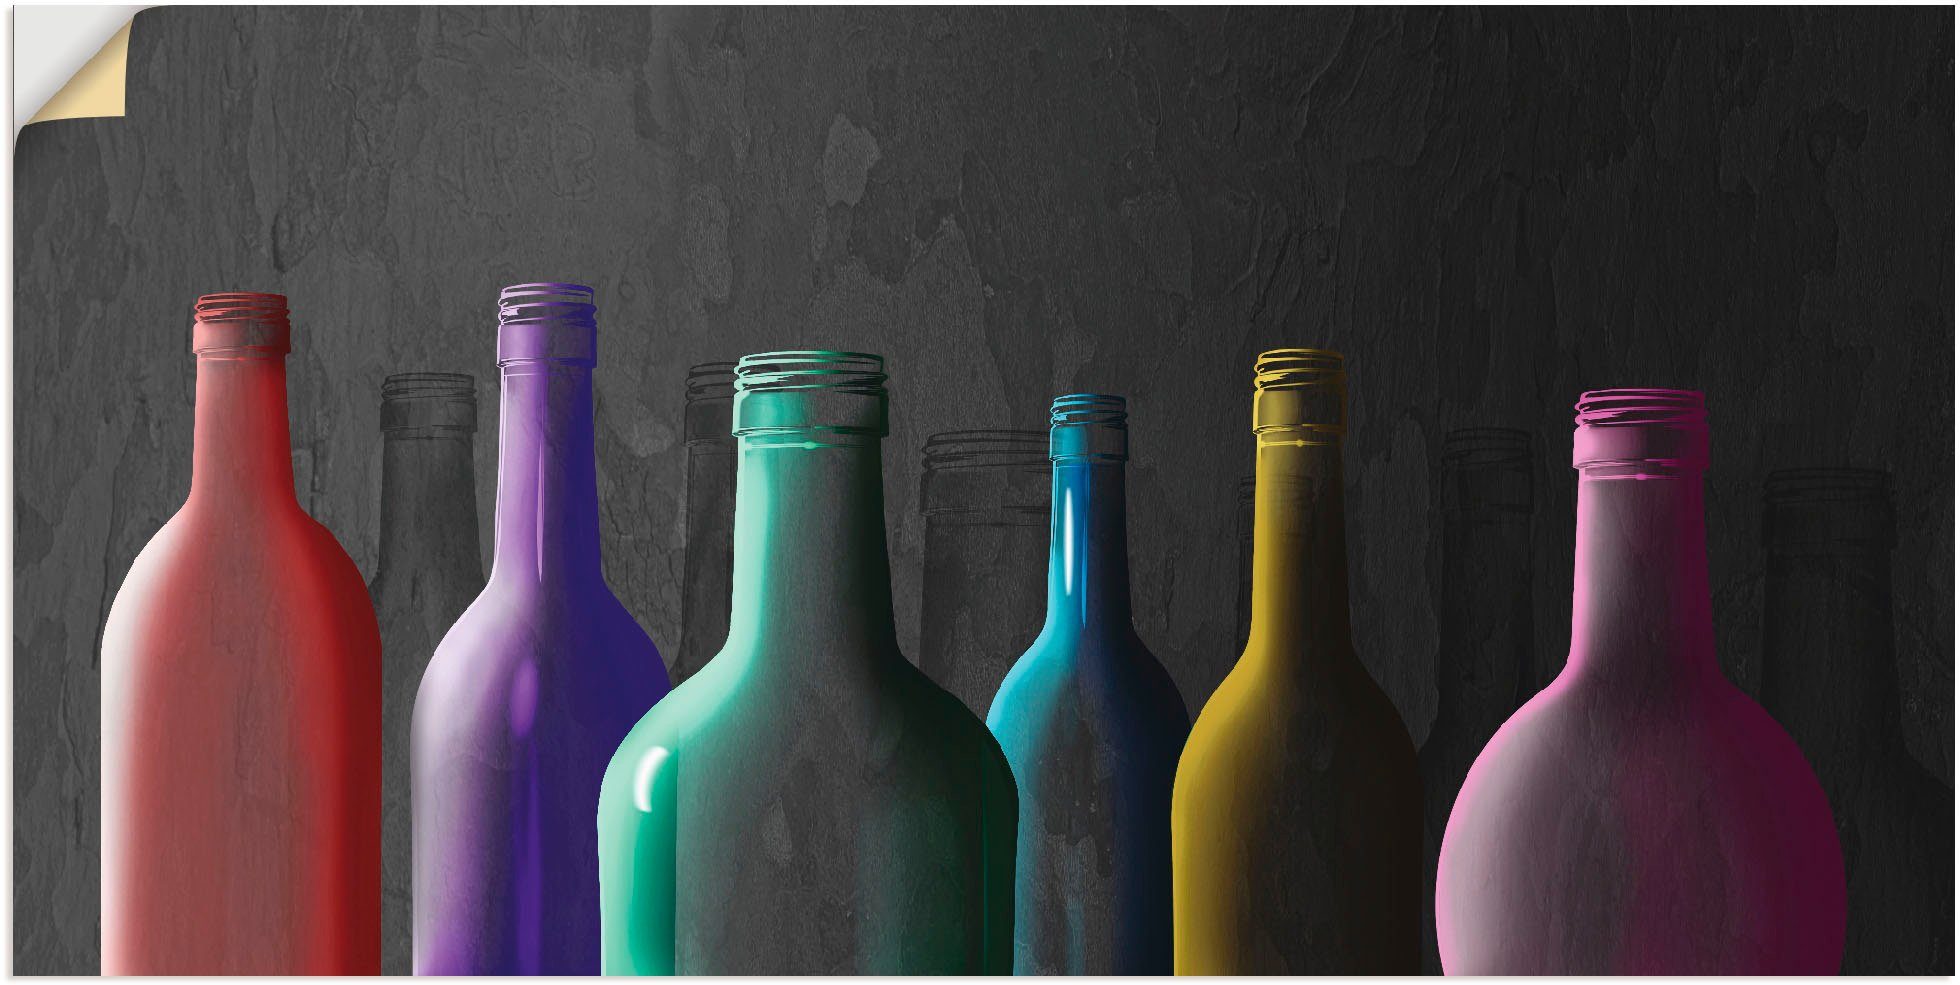 Artland Artprint Veelkleurige glazen flessen in vele afmetingen & productsoorten - artprint van aluminium / artprint voor buiten, artprint op linnen, poster, muursticker / wandfoli